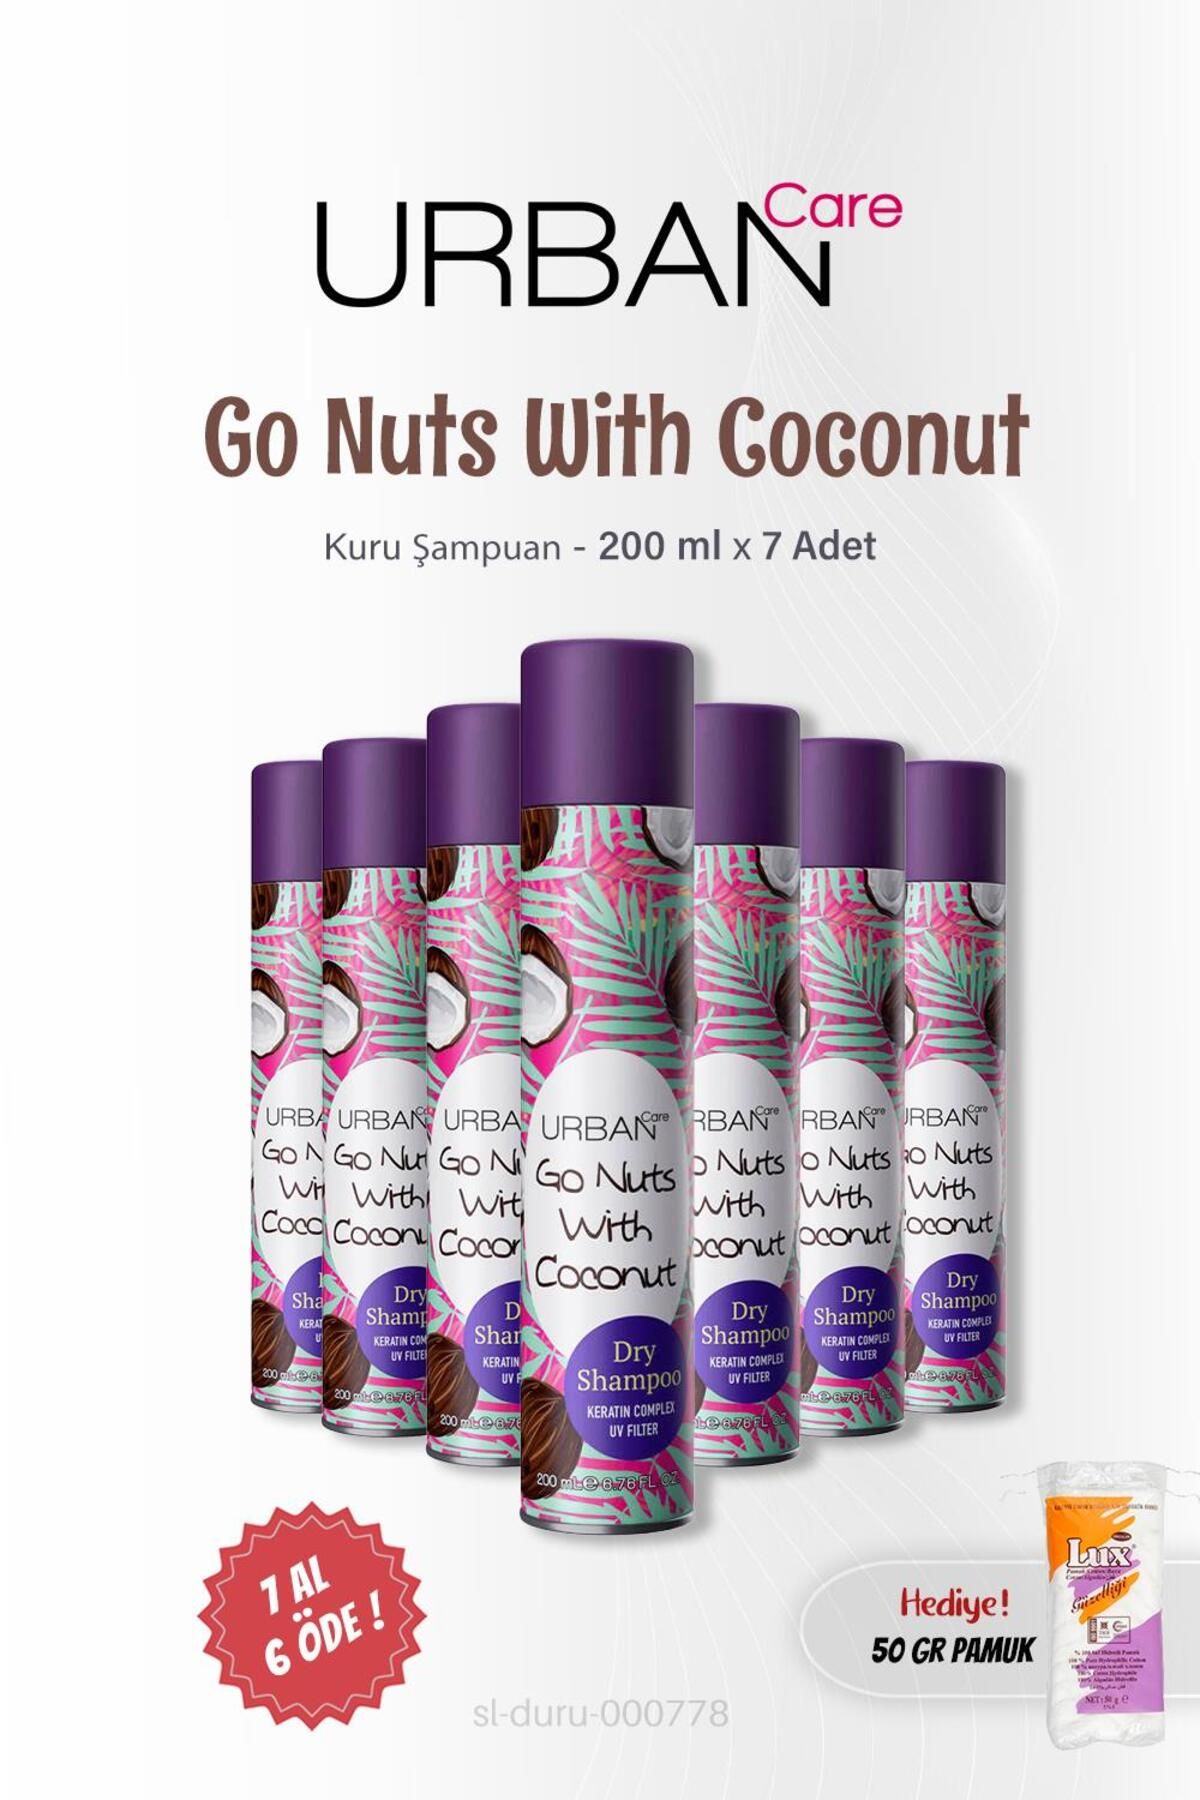 Urban Care 7 AL 6 ÖDE Kuru Şampuan Go Nuts With Coconut 200 ml ve 50 gr Pamuk